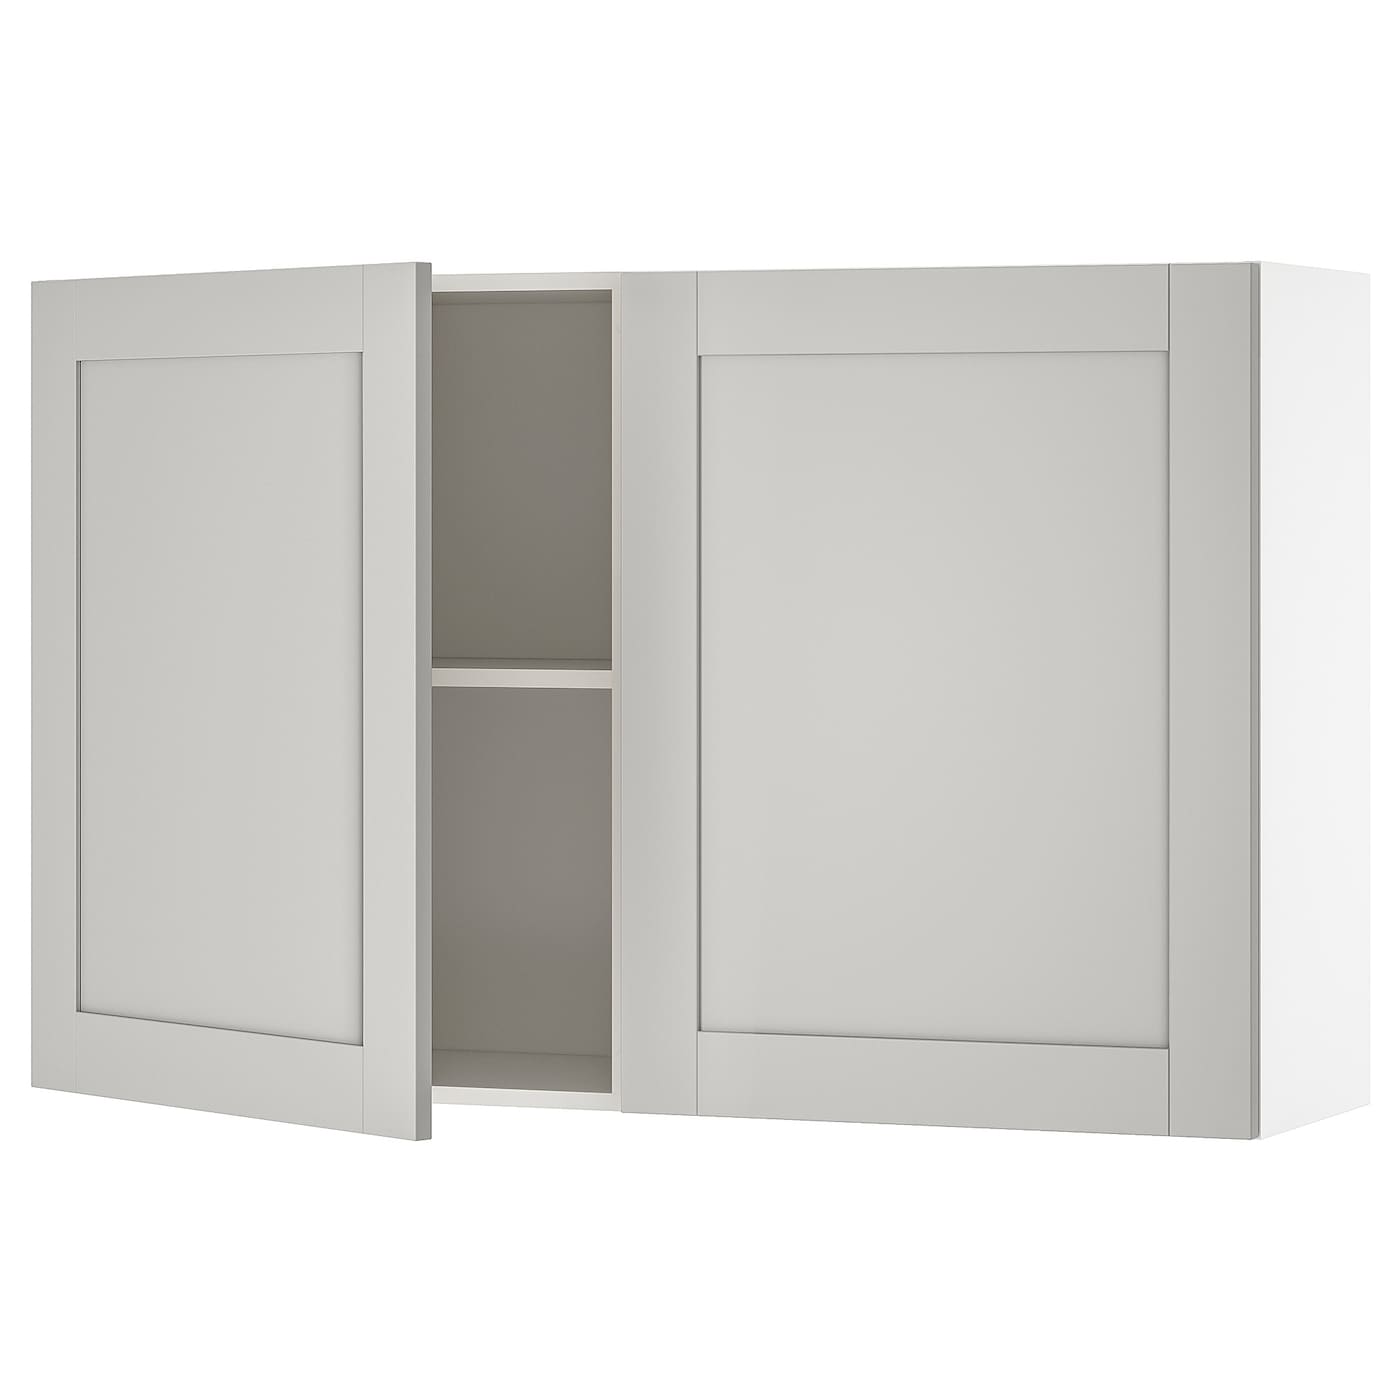 Кухонный настенный шкаф - IKEA KNOXHULT/КНОКСХУЛЬТ ИКЕА, 120x75 см, серый